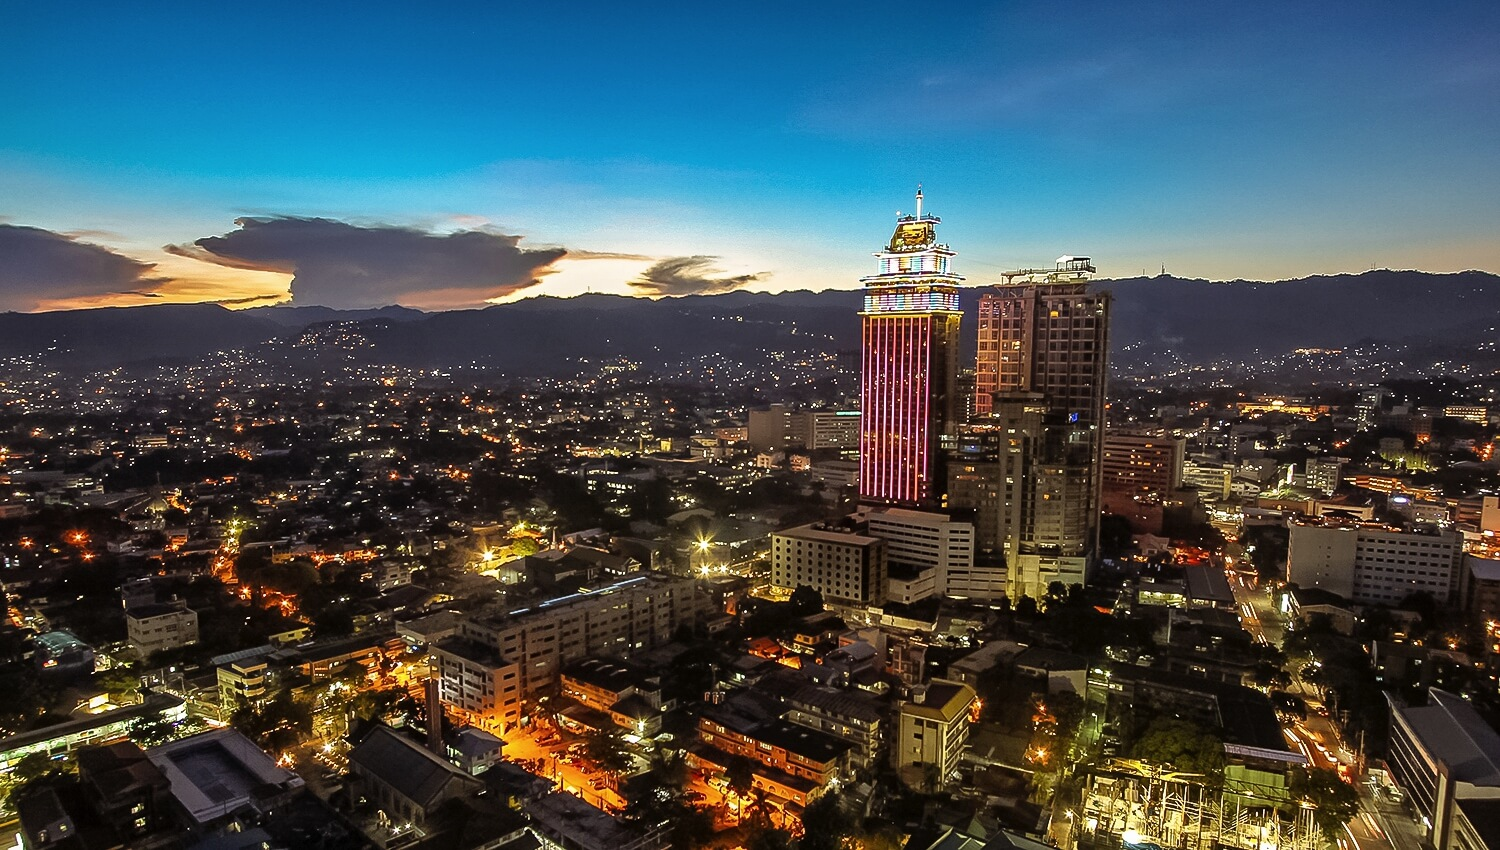 CROWN REGENCY HOTEL and TOWERS Images Cebu Videos